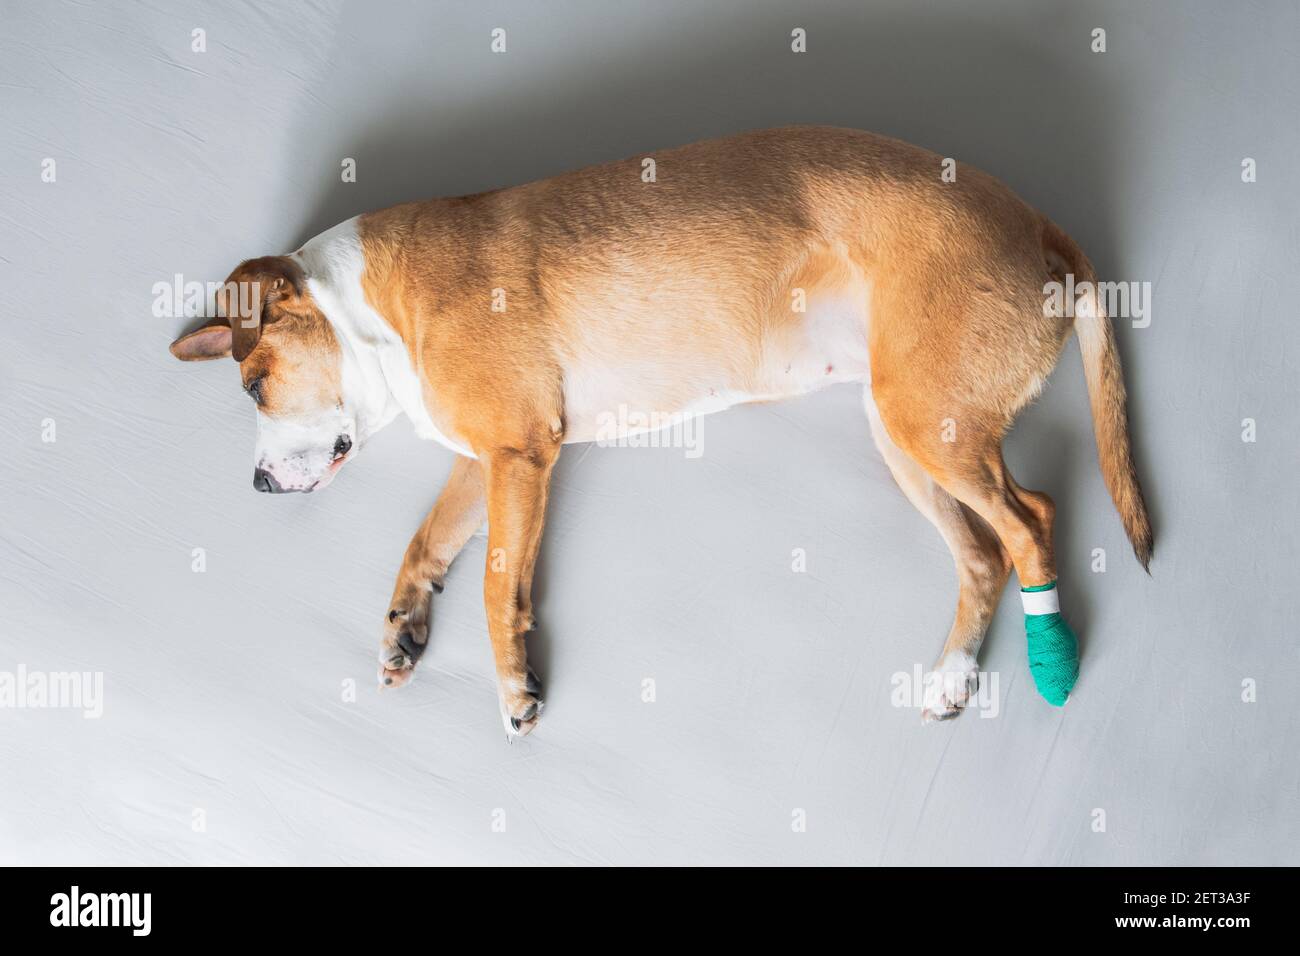 Il cane si stende sul lato con la gamba in bendaggio medico. Animali feriti, trauma, zampa ferita, concetti veterinari Foto Stock